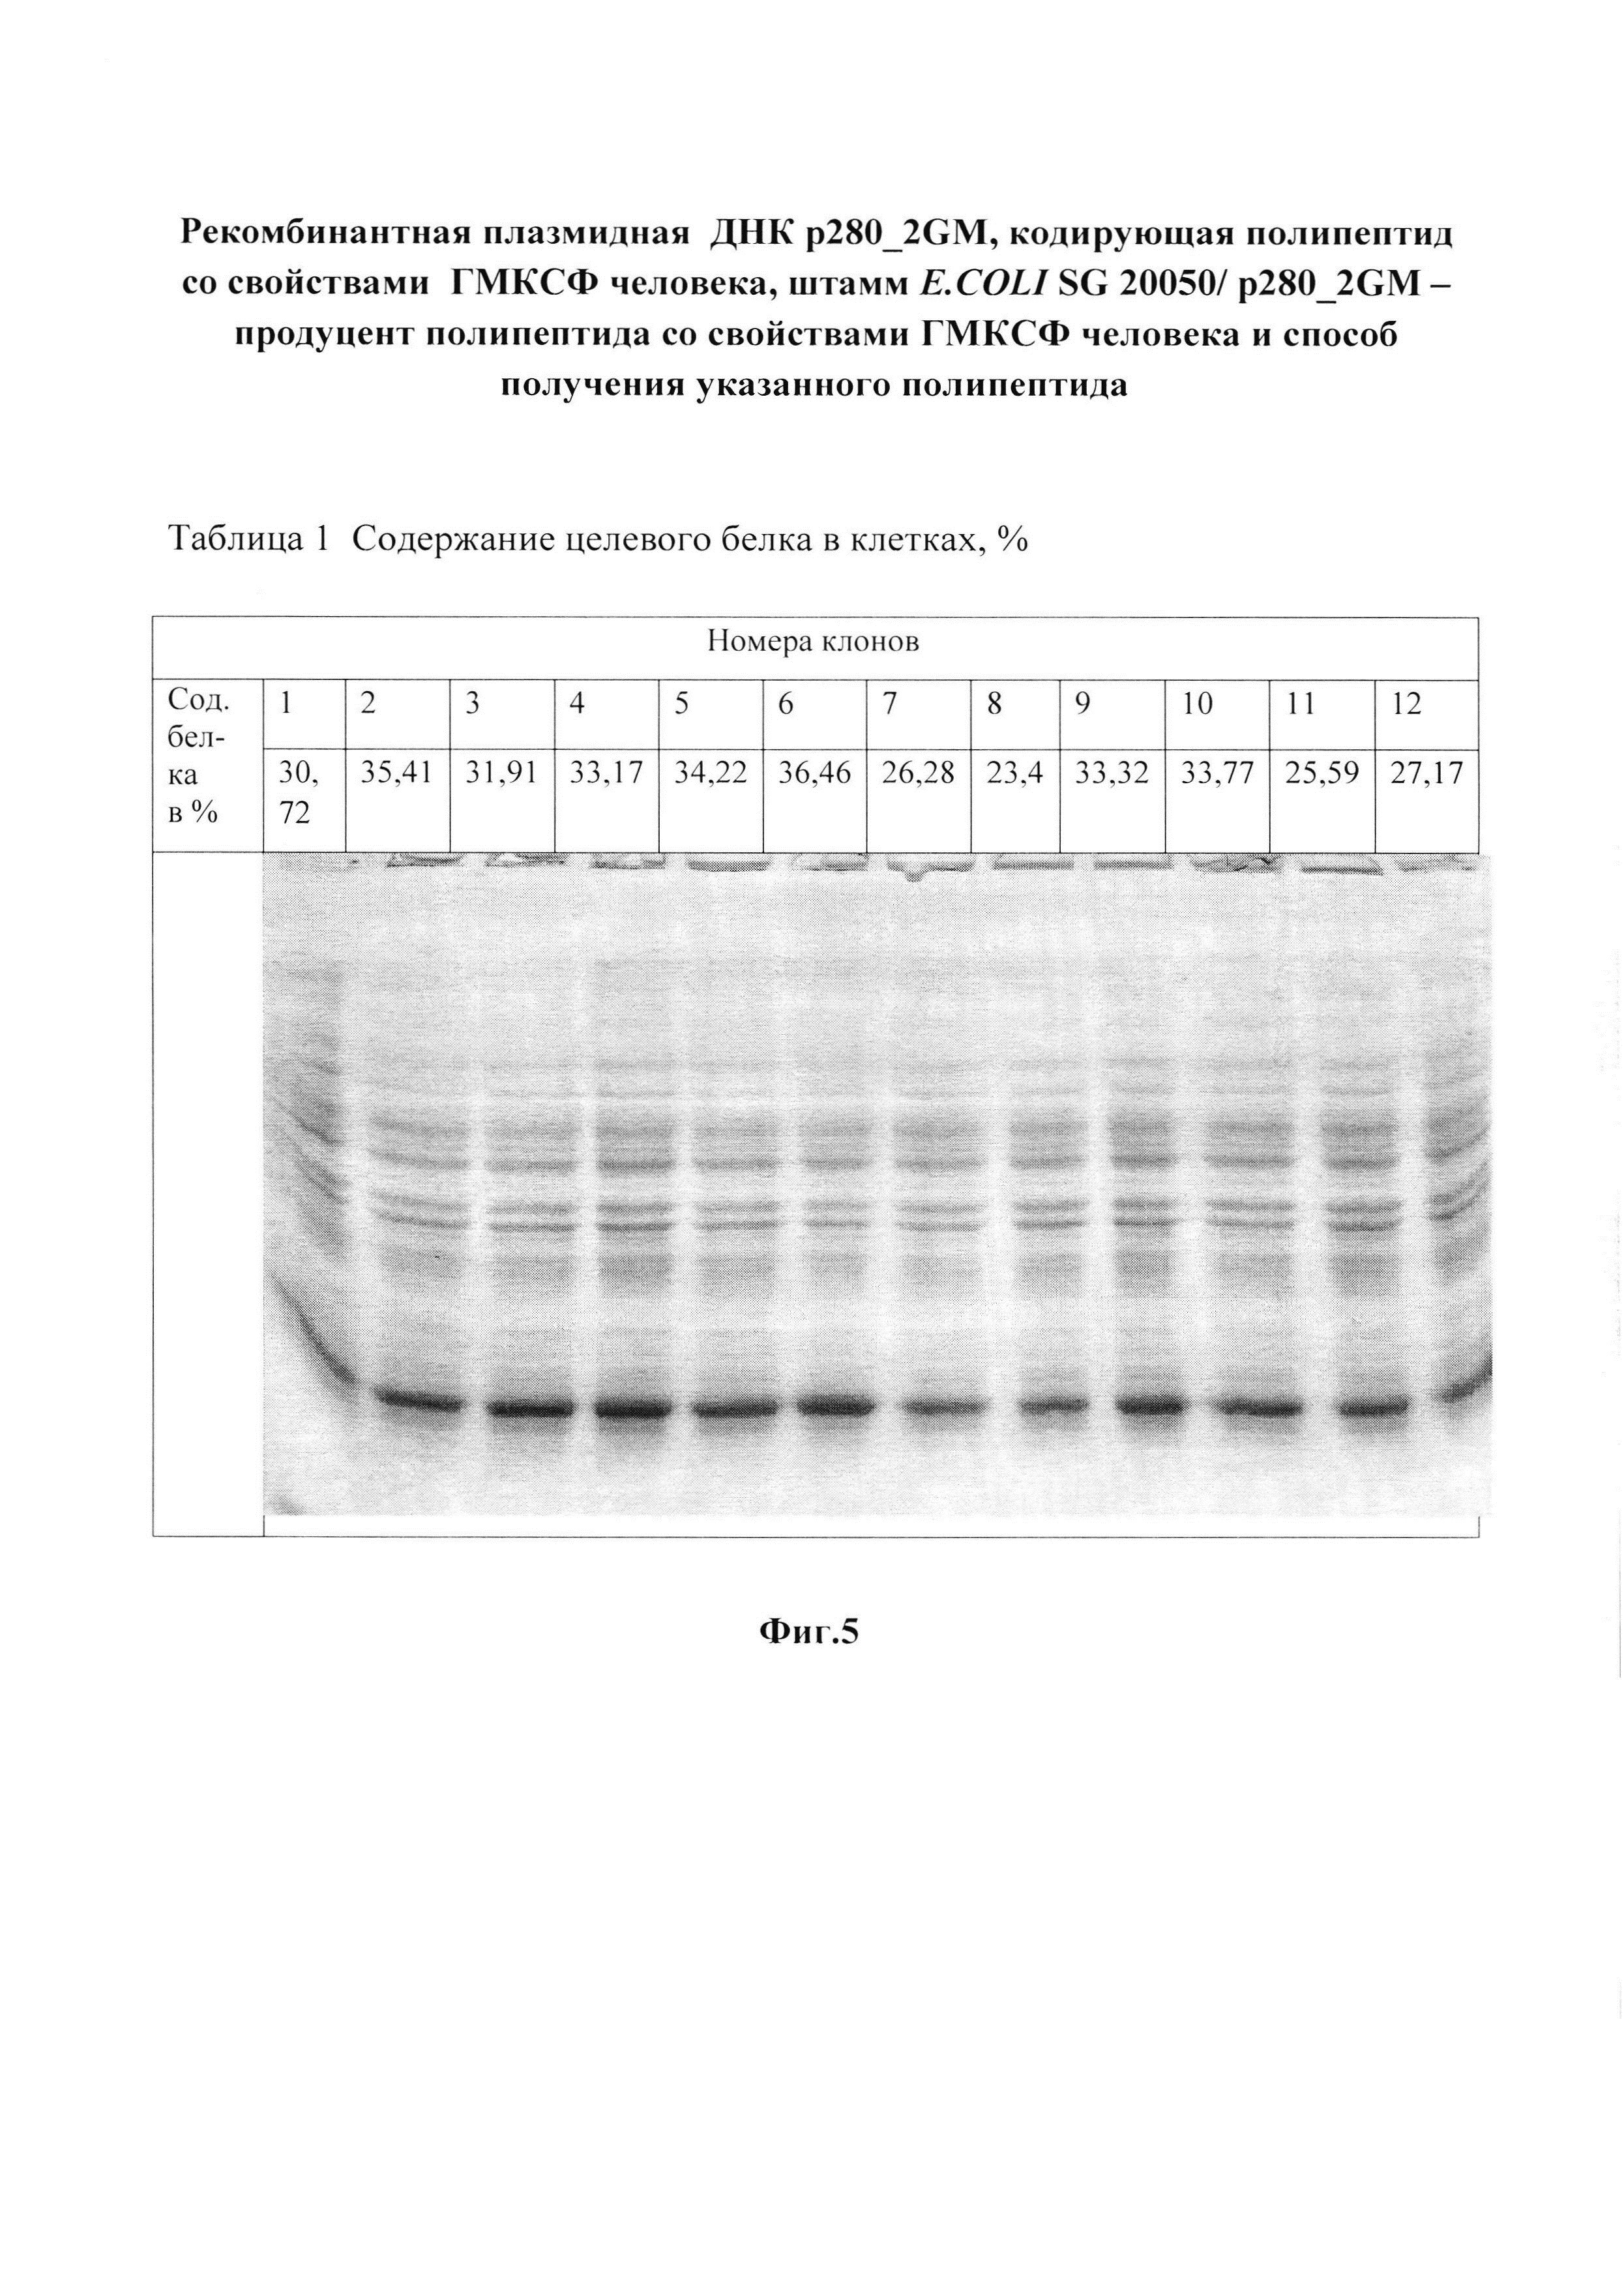 Рекомбинантная плазмидная ДНК p280_2GM, кодирующая полипептид со свойствами гранулоцитарно-макрофагального колониестимулирующего фактора человека, штамм E.COLI SG 20050/ p280_2GM - продуцент полипептида со свойствами гранулоцитарно-макрофагального колониестимулирующего фактора человека и способ получения указанного полипептида